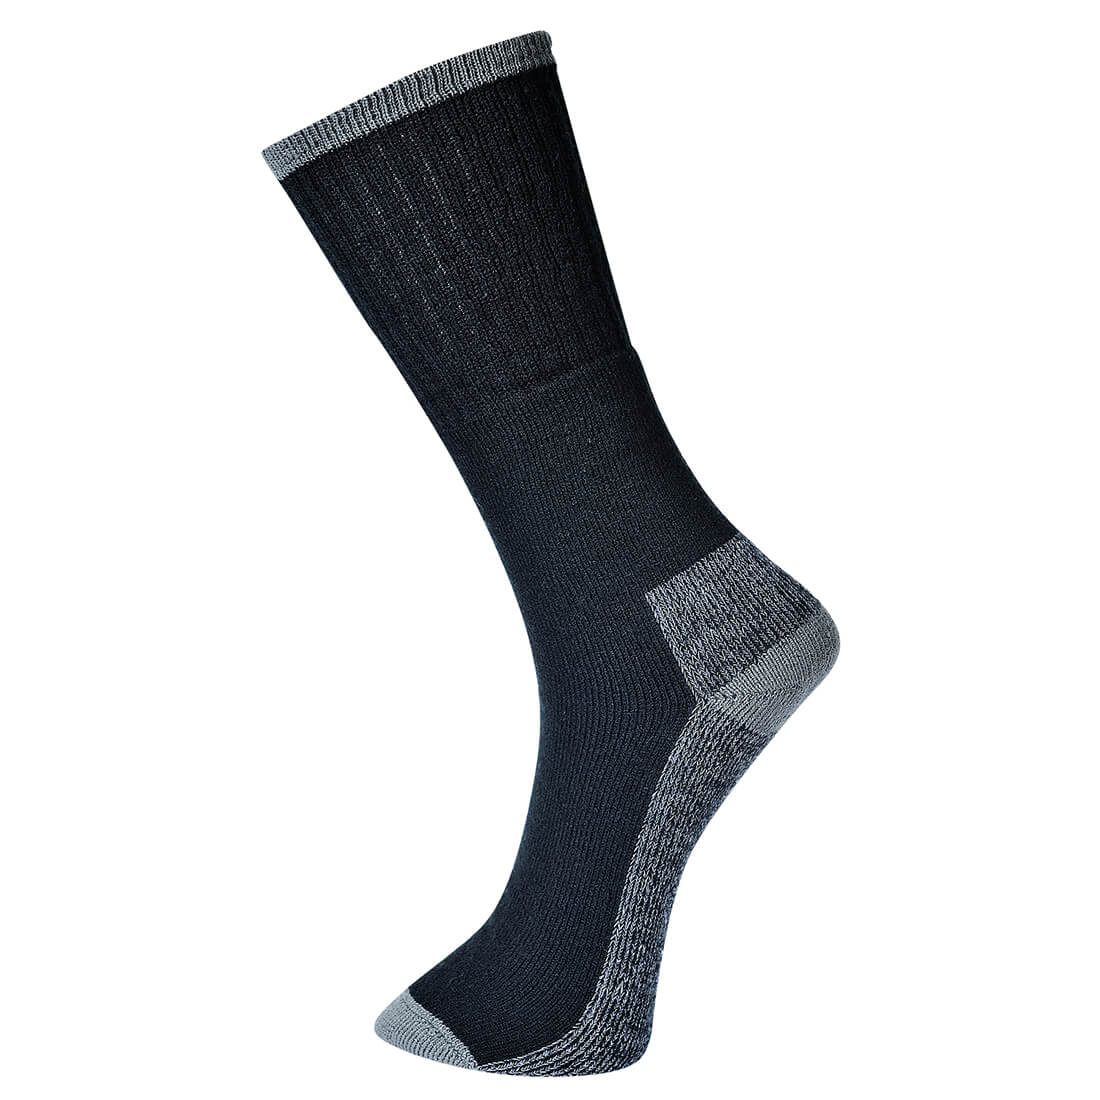 Image of Portwest Work Socks Black 10 - 13 Pack of 3